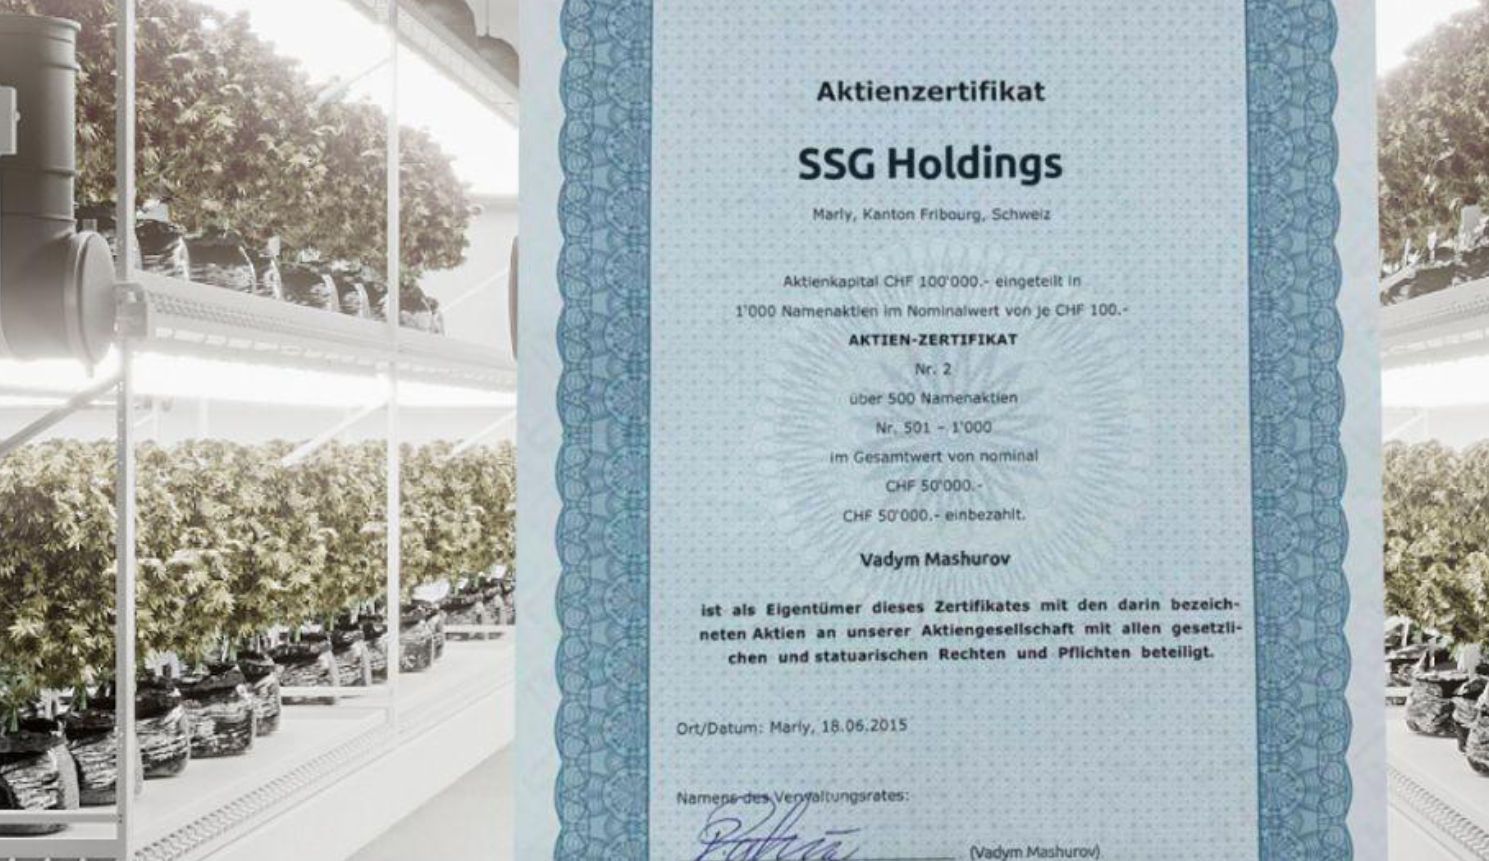 SSG Holdings, Vadym Mashurov